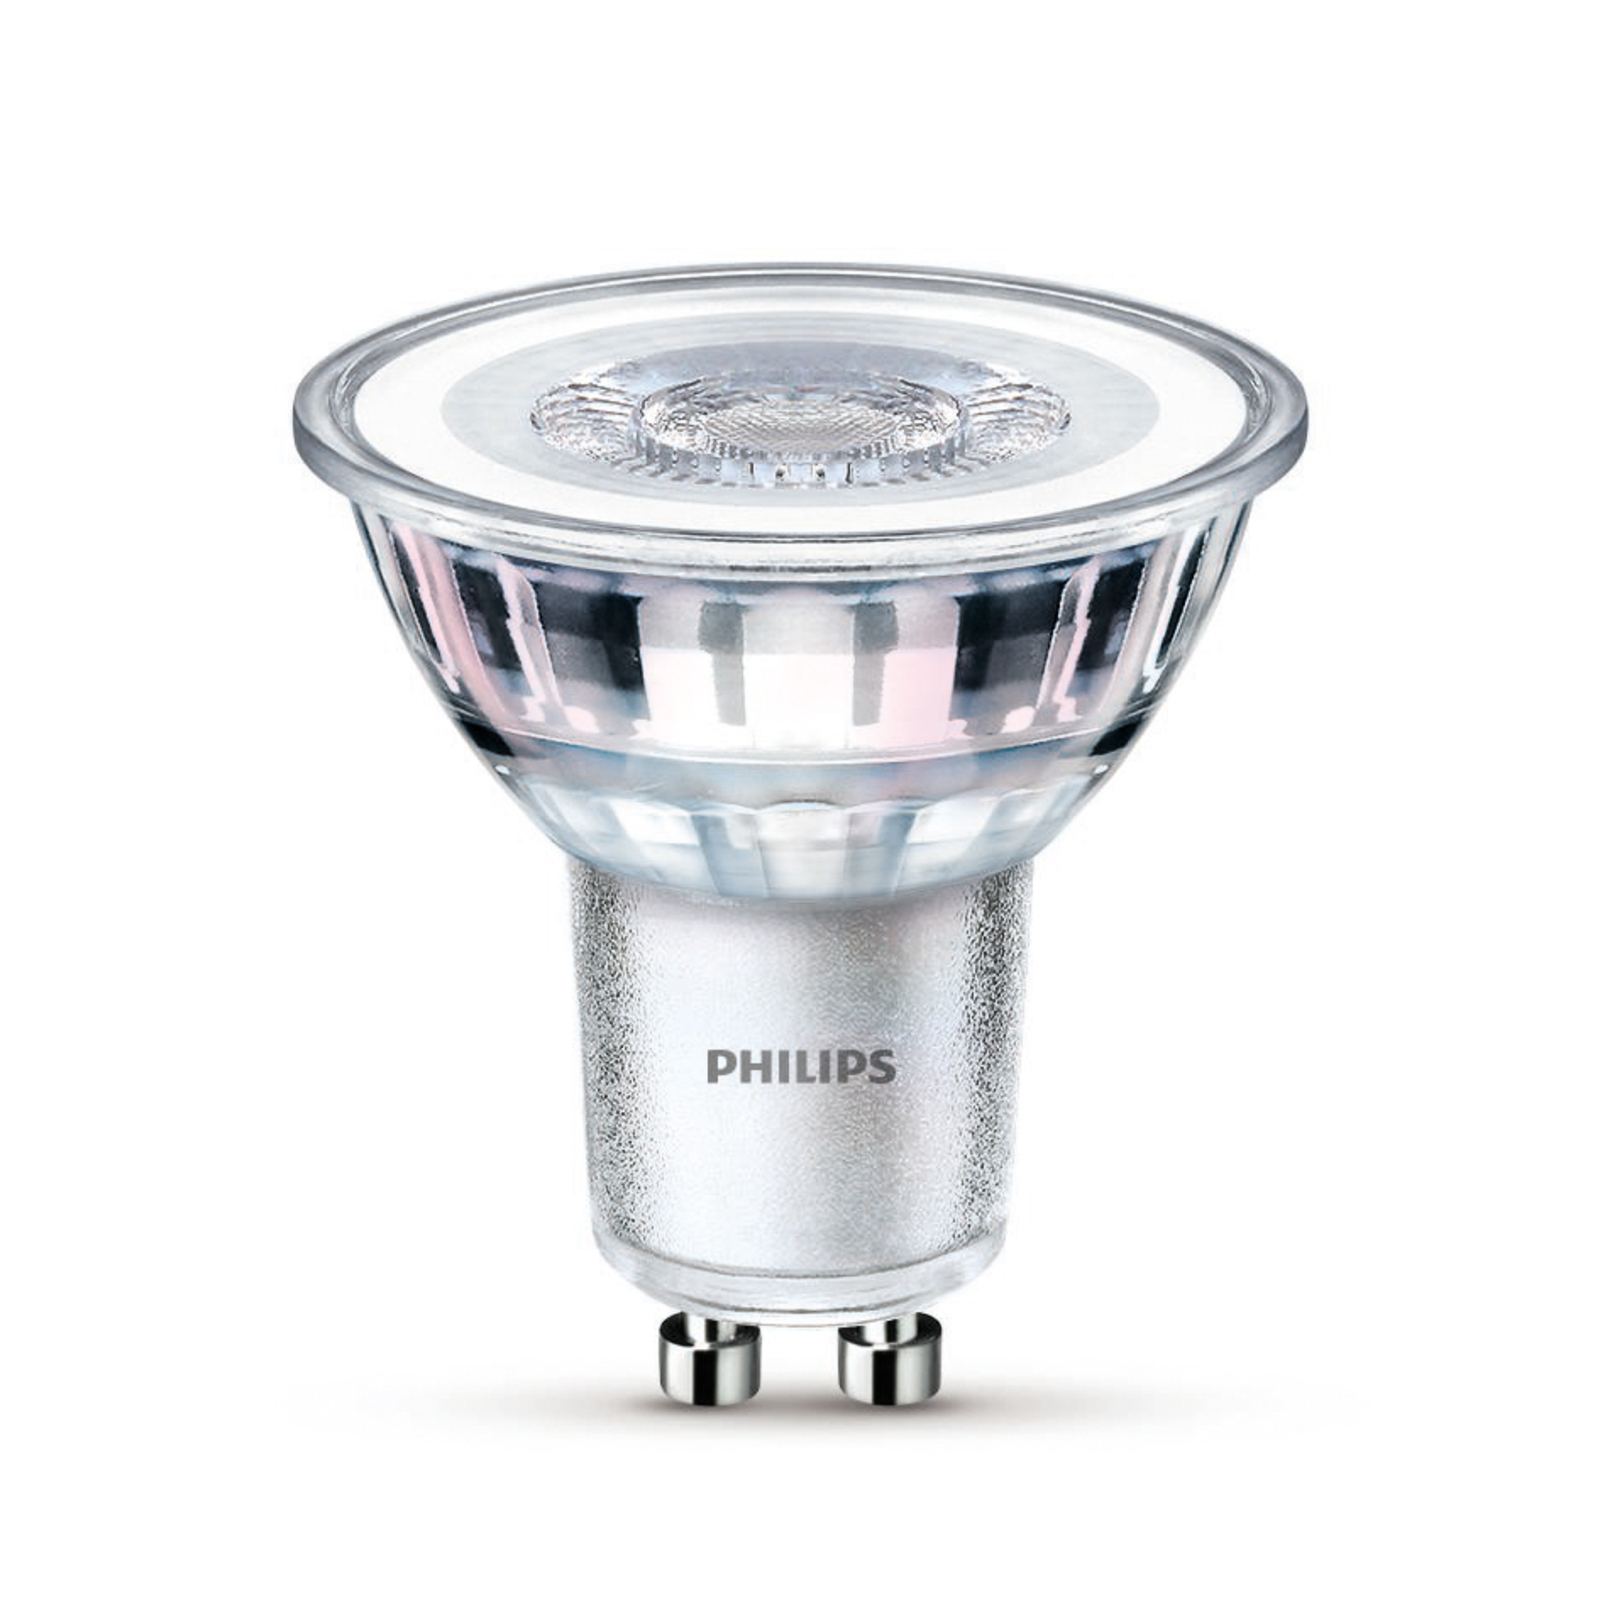 Philips LED-Lampe GU10 3,5W 275lm 840 klar 36° 2er